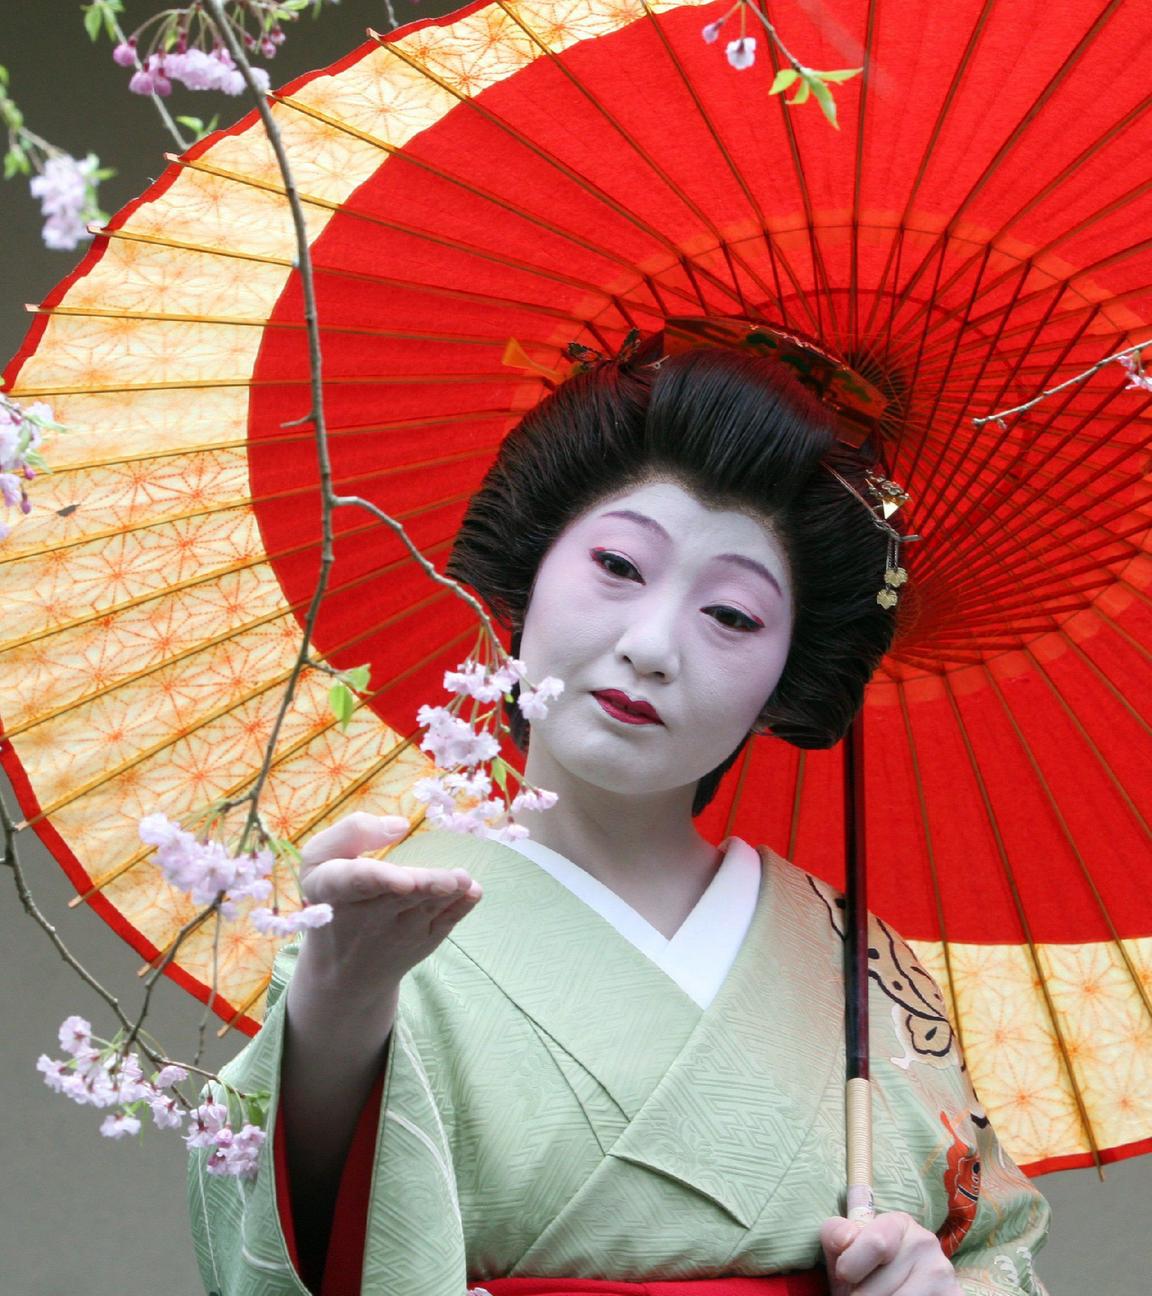 Eine japanische Geisha betrachtet den Ast eines japanischen Kirschbaums. Sie hält einen dekorativen, roten Regenschirm.